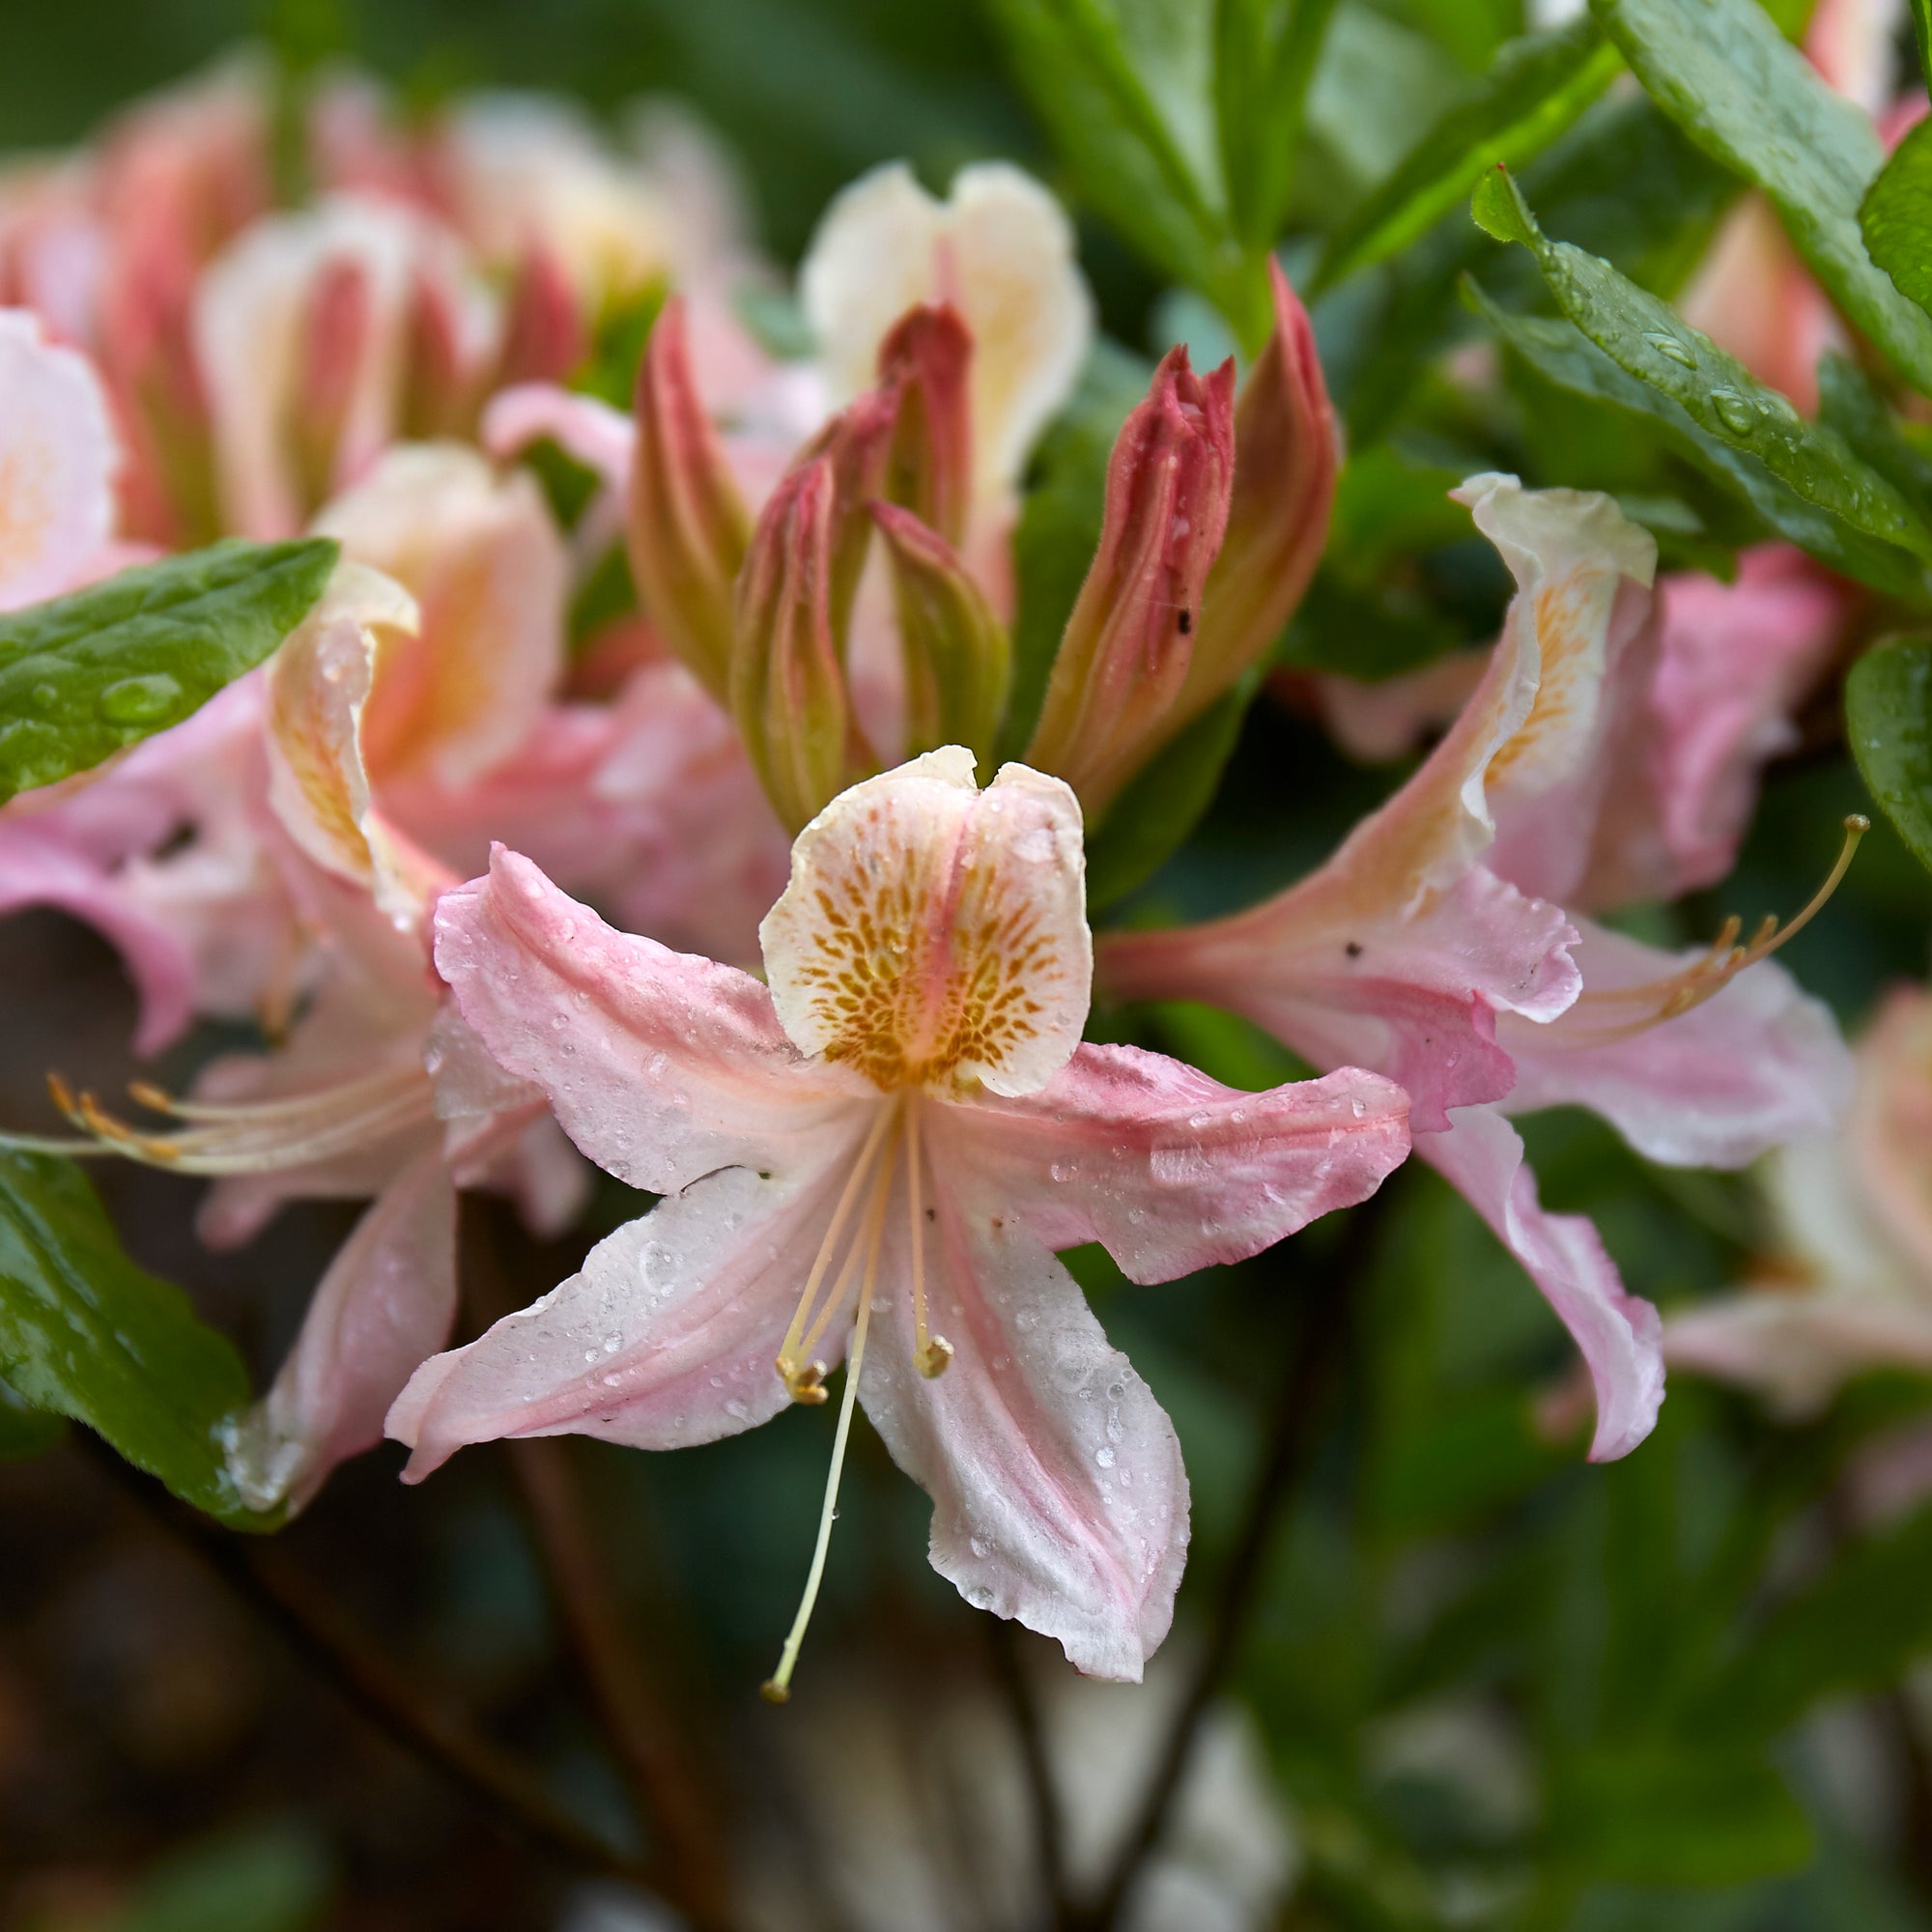 Image of Western azalea flower close up